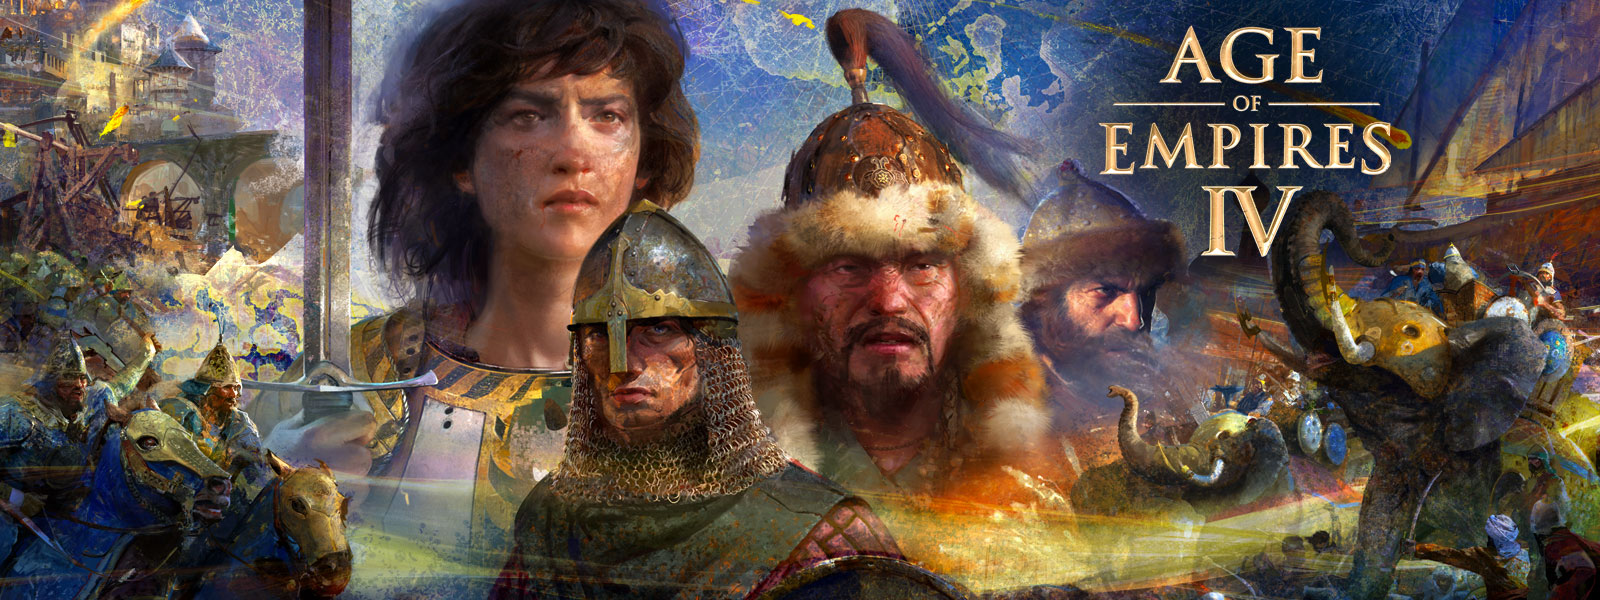 Age of Empires IV。地図を背景に、4人のキャラクターとその周りの戦争のシーン、象、馬に乗った人物